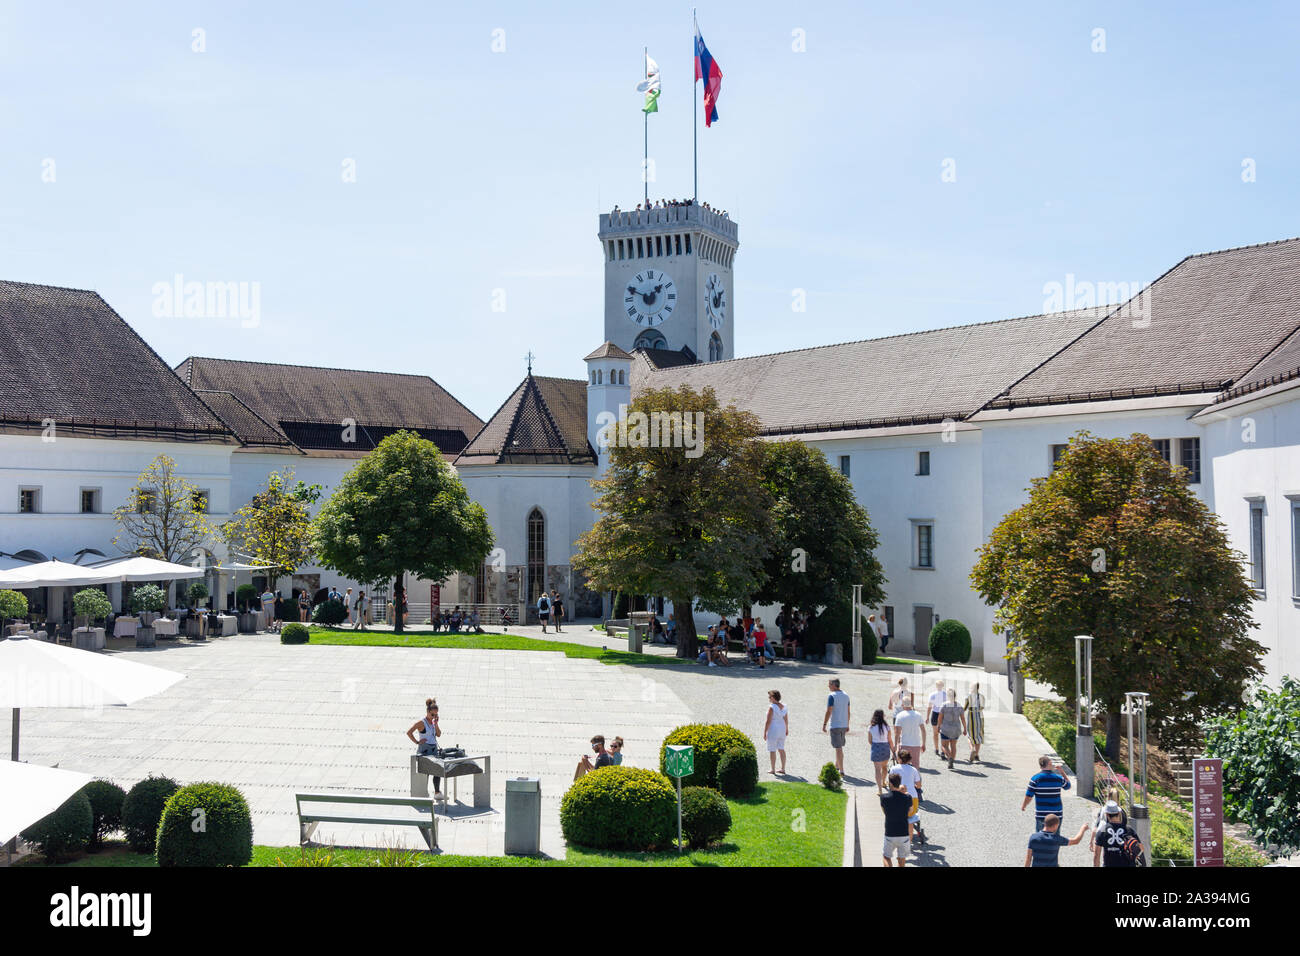 The Courtyard, Ljubljana Castle, Old Town, Ljubljana, Slovenia Stock Photo